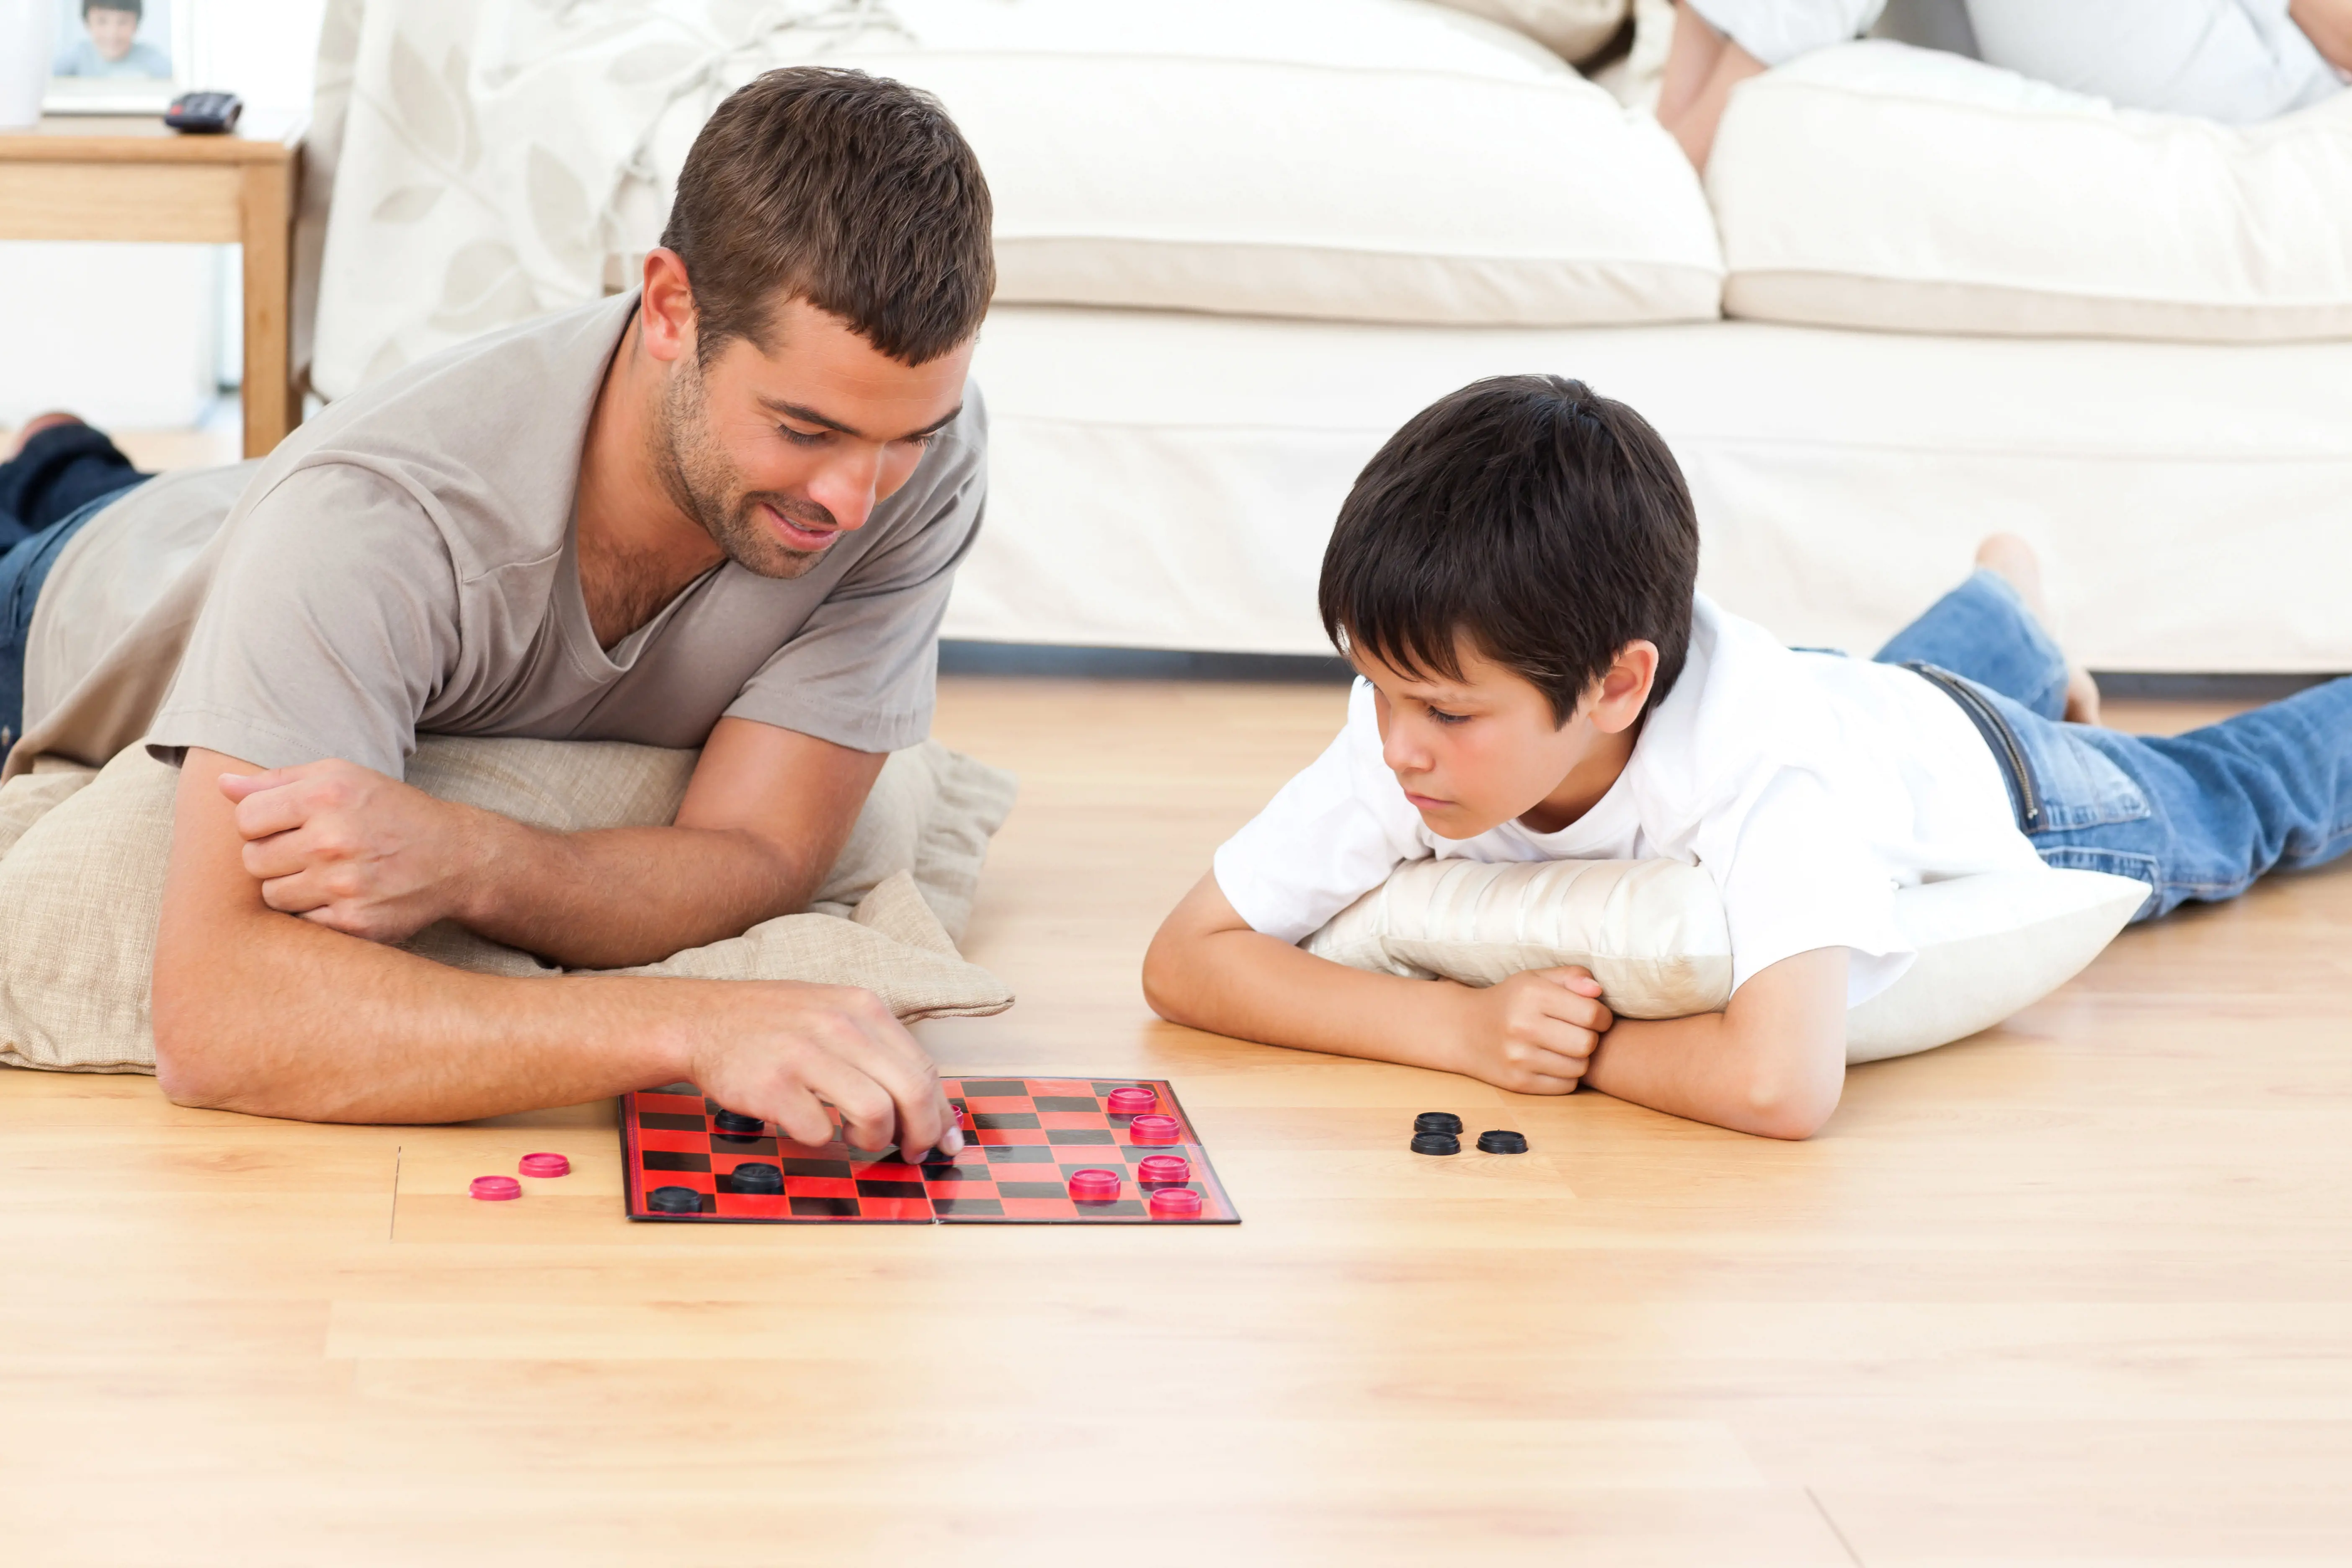 Mann og gutt ligger på gulvet og spiller skakk